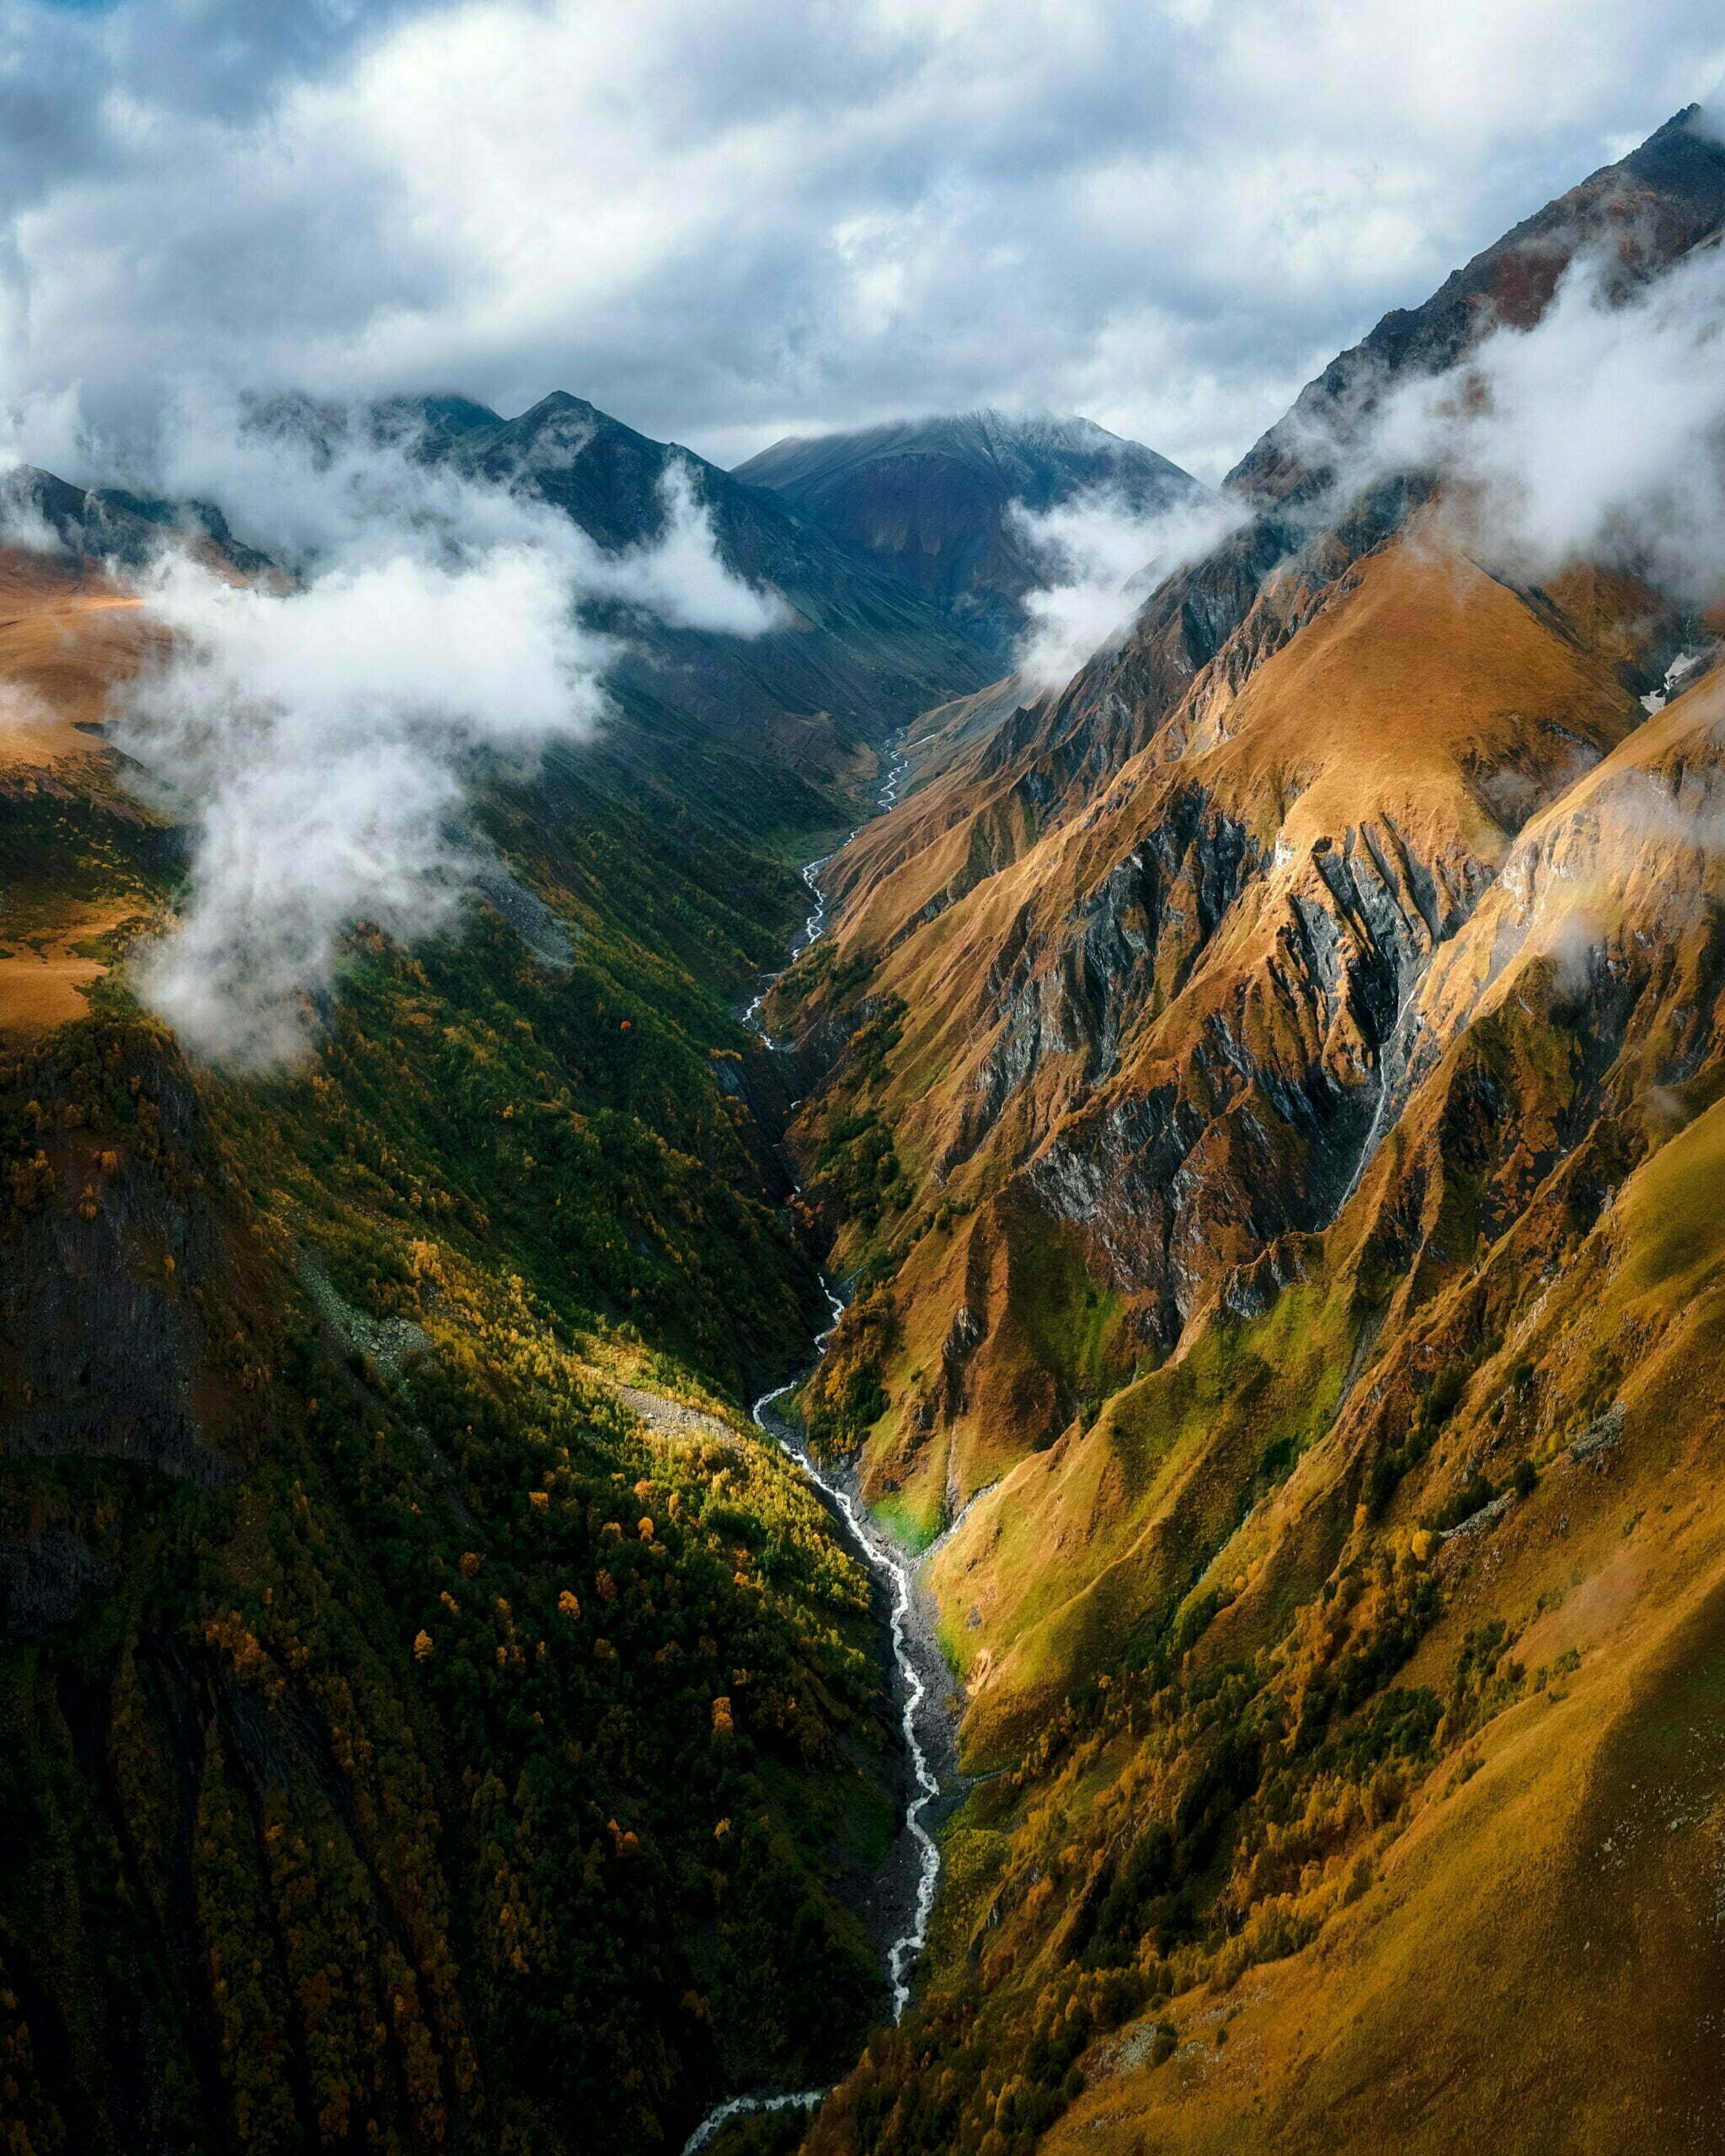 The legendary Caucasus mountains of Georgia